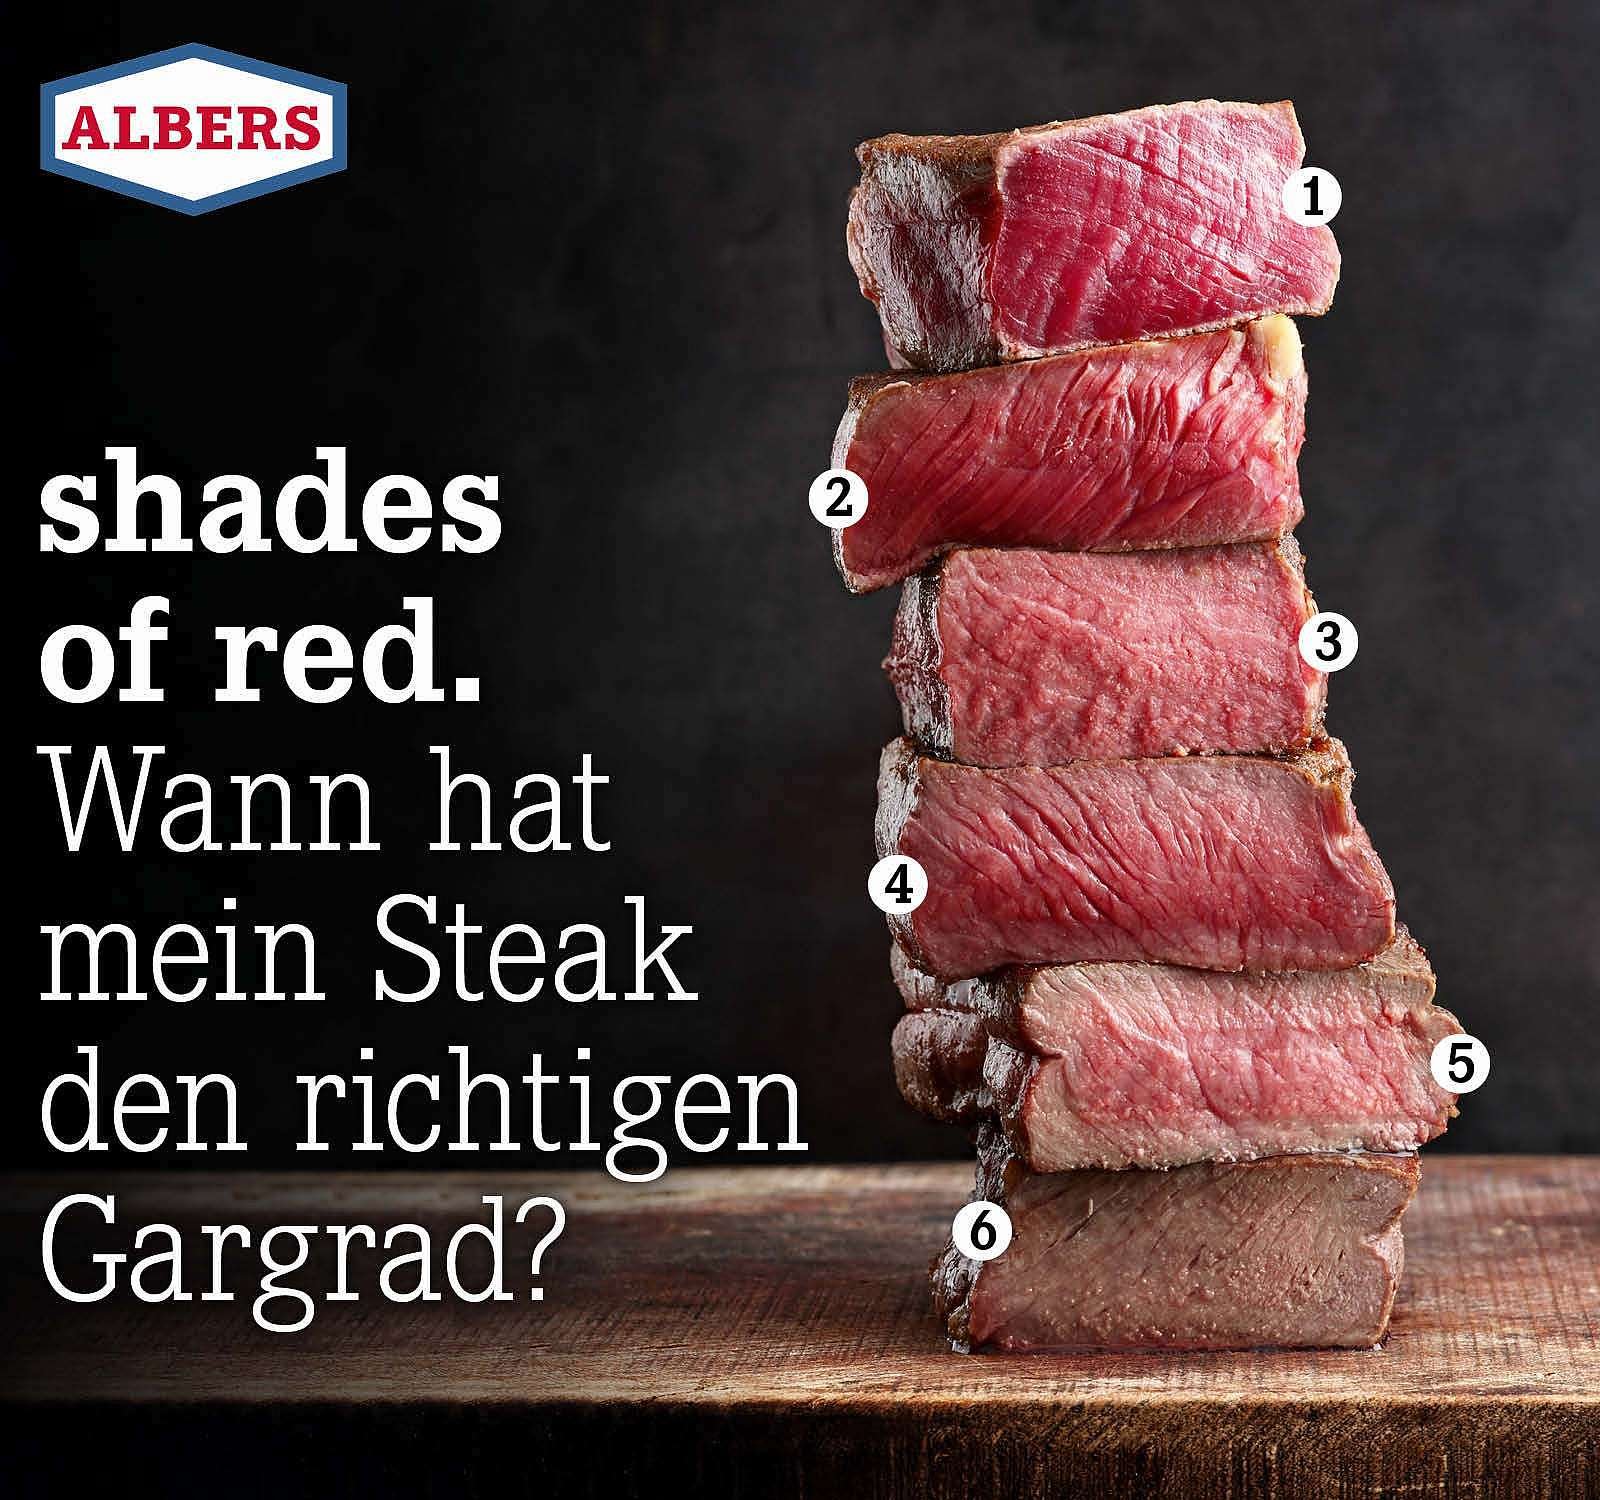 Shop den Milled Wann richtigen mein Food Steak Albers hat DE: Gargrad? |